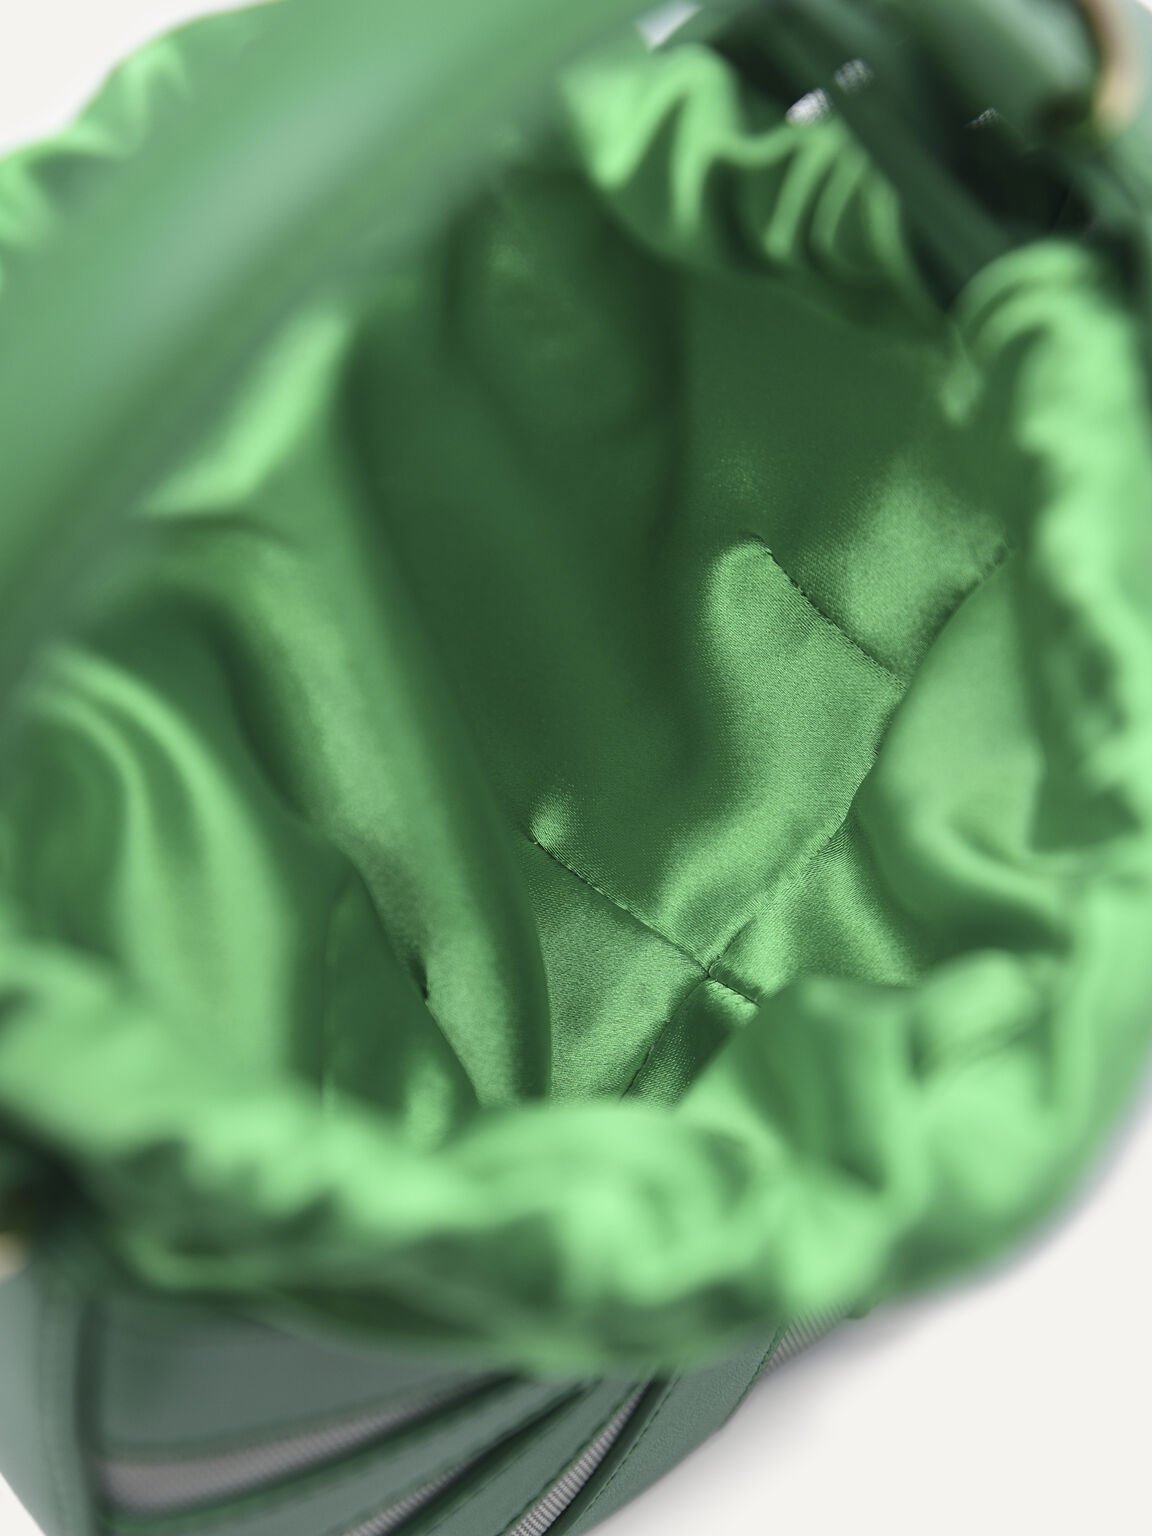 Riata Mini Hobo Bag, Green